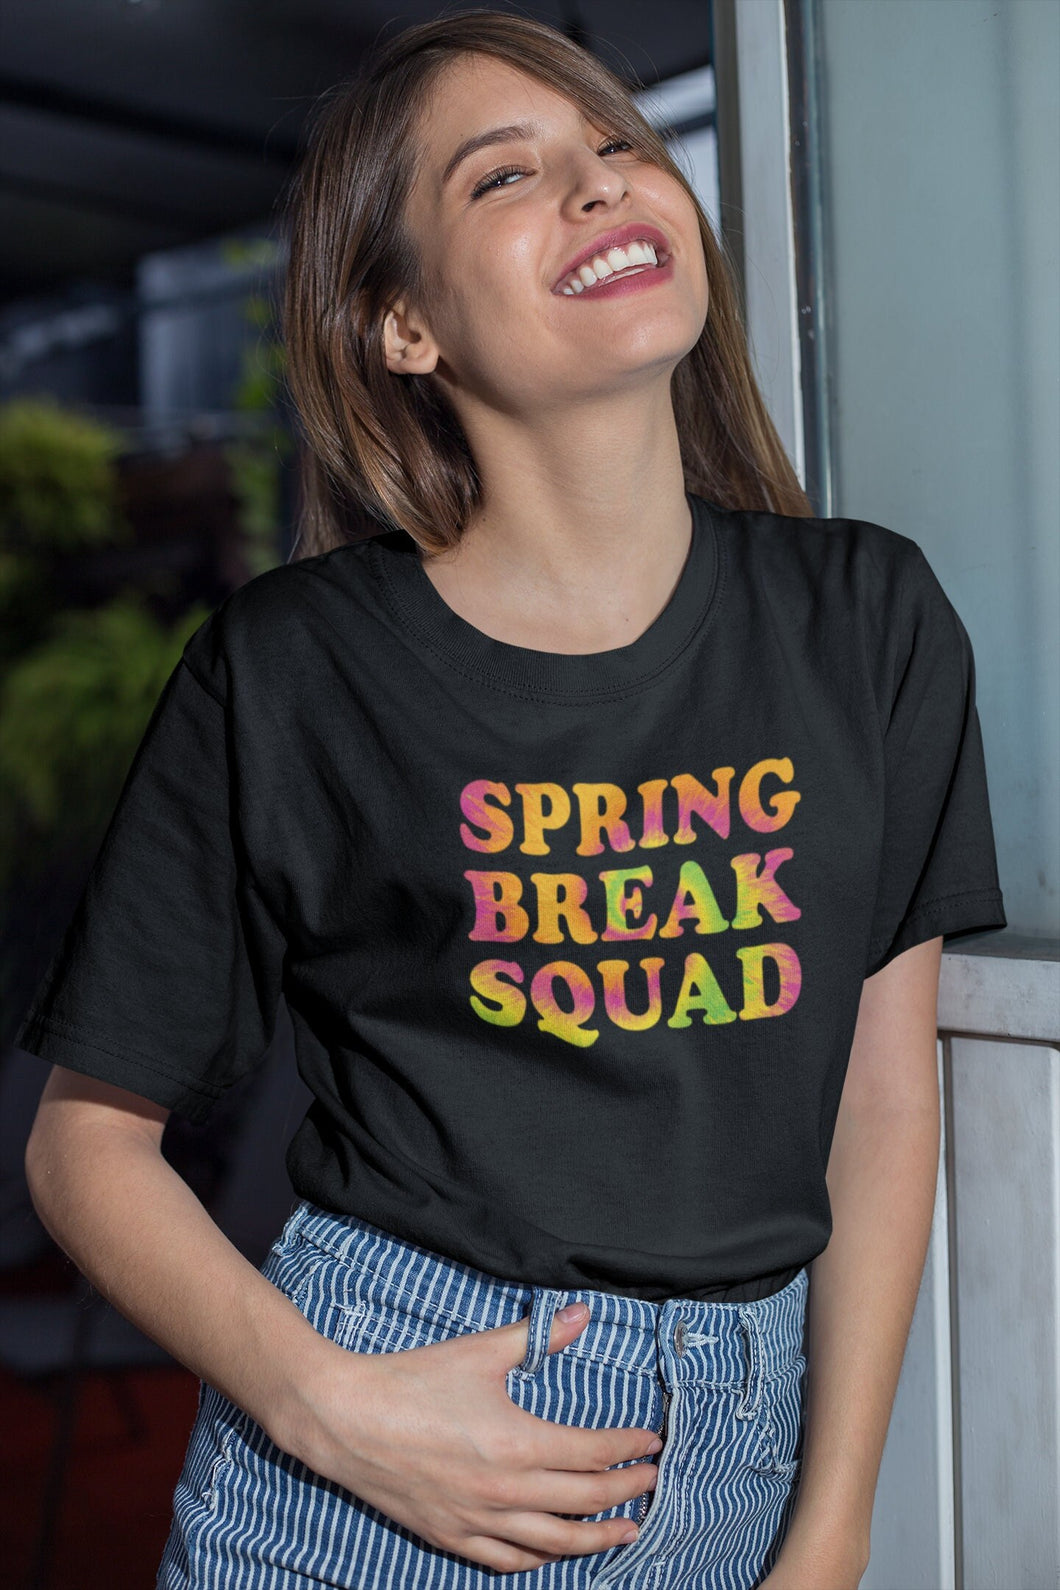 Spring Break Squad Shirt, Spring Break 2022 Shirt, Spring Lovers Shirt, Spring Season Shirt